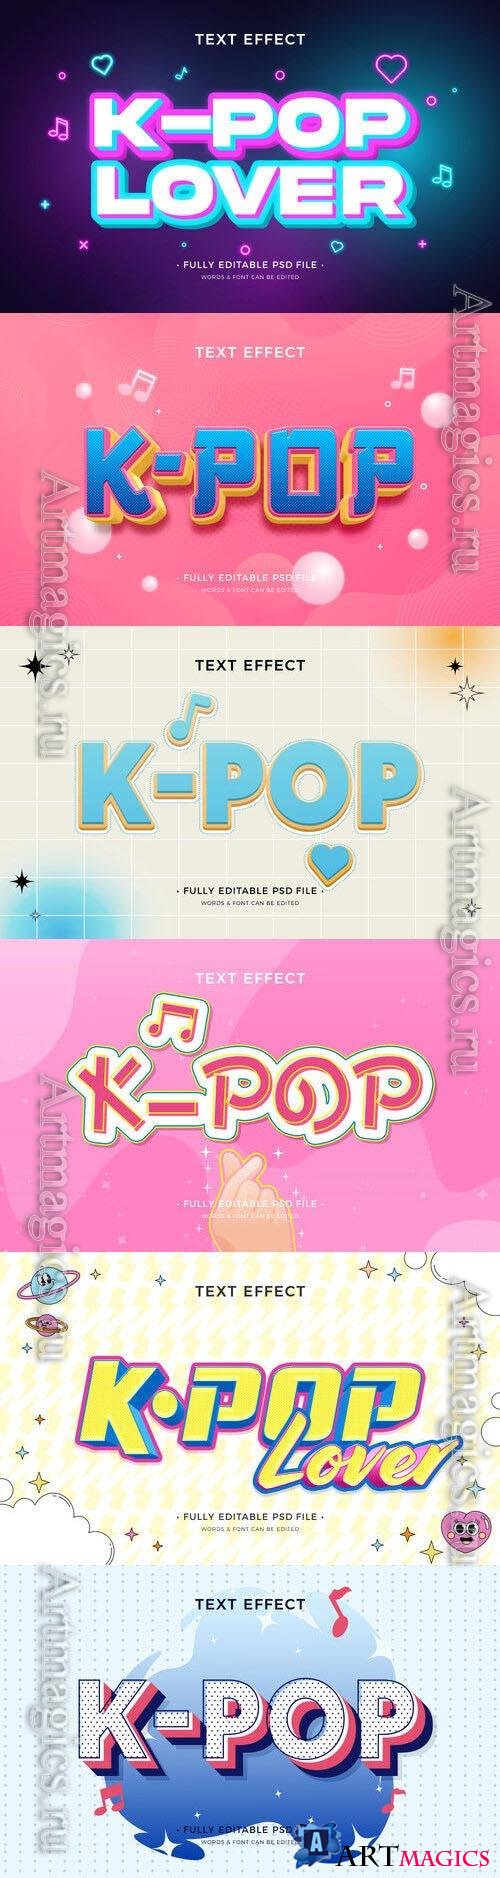 PSD k-pop text effect template set 